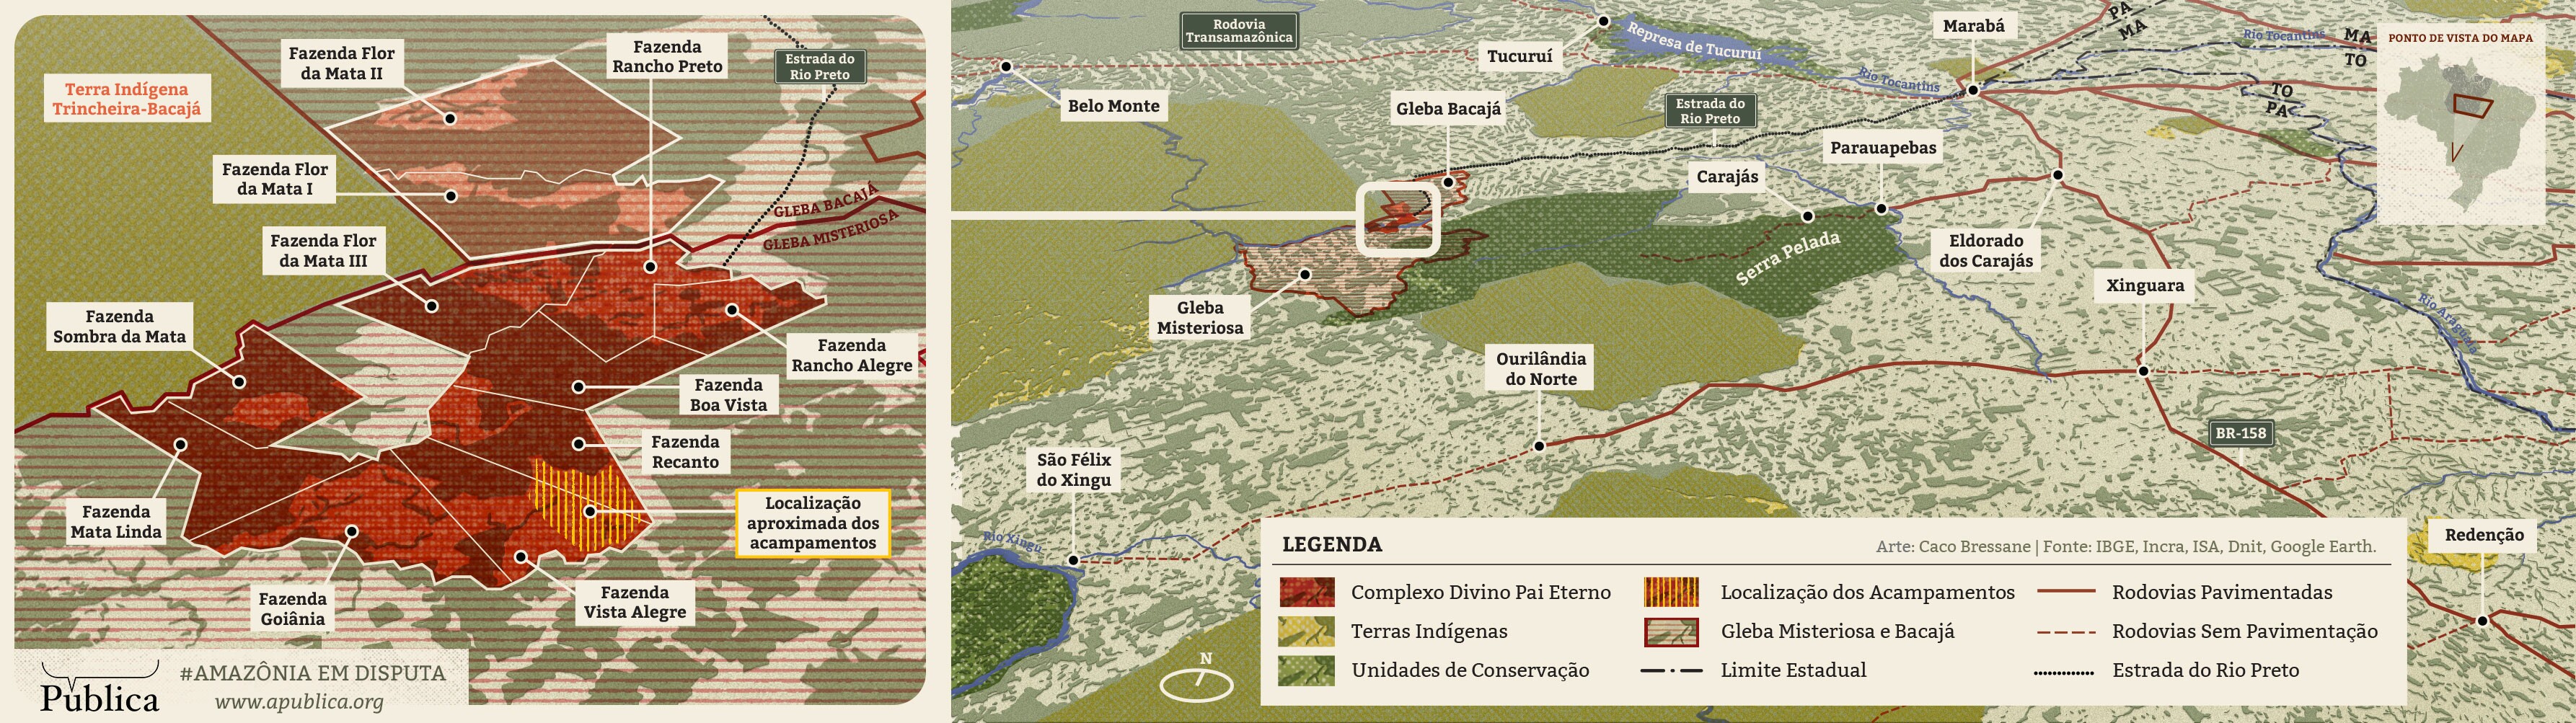 Mapa ilustrado da região do sul do Pará mostra o complexo e fazendas e a região do acampamento no Complexo Divino Pai Eterno (Arte: Caco Bressane)